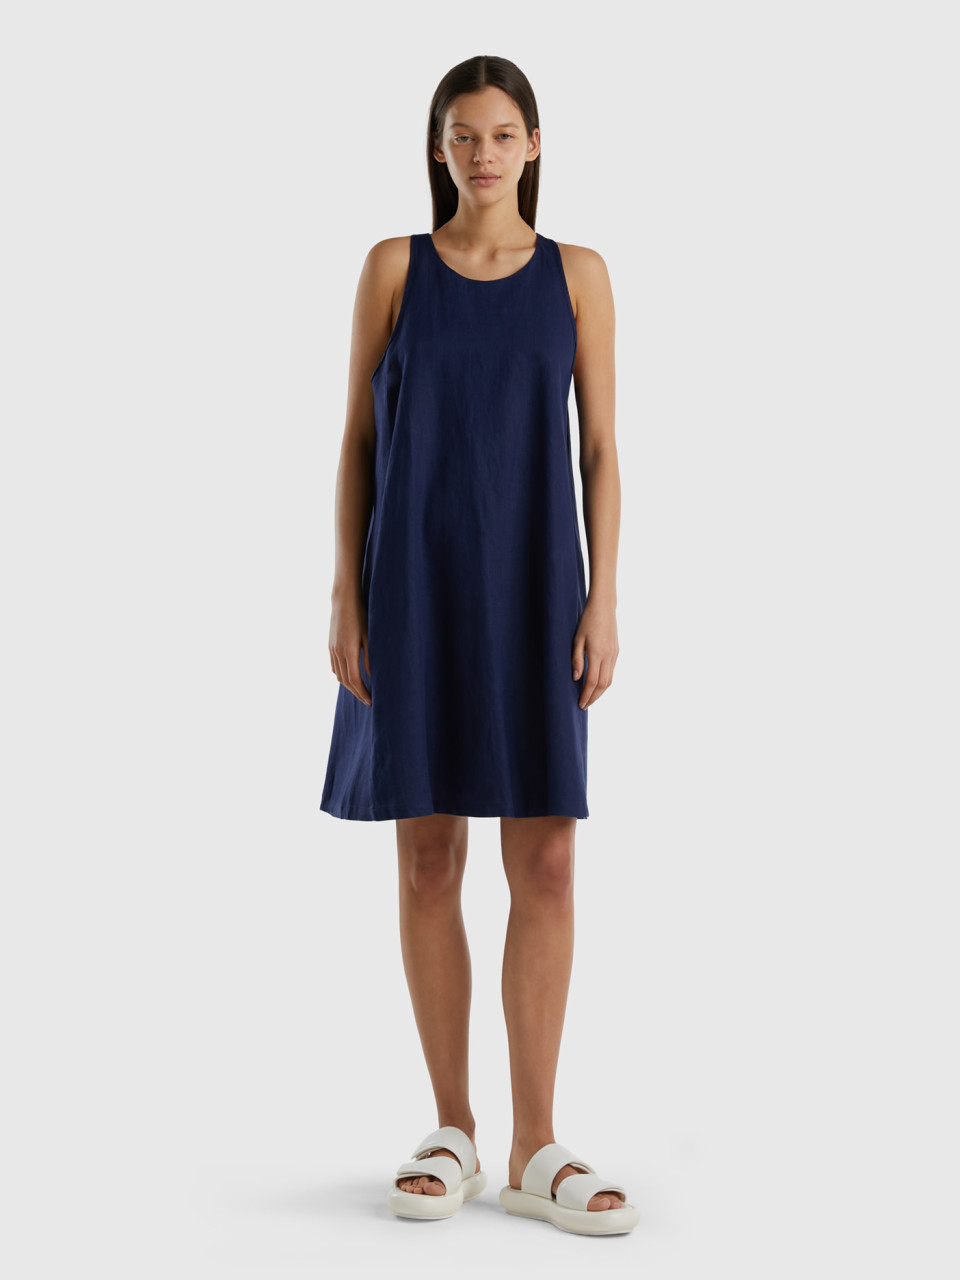 Benetton, Sleeveless Dress In Pure Linen, Dark Blue, Women